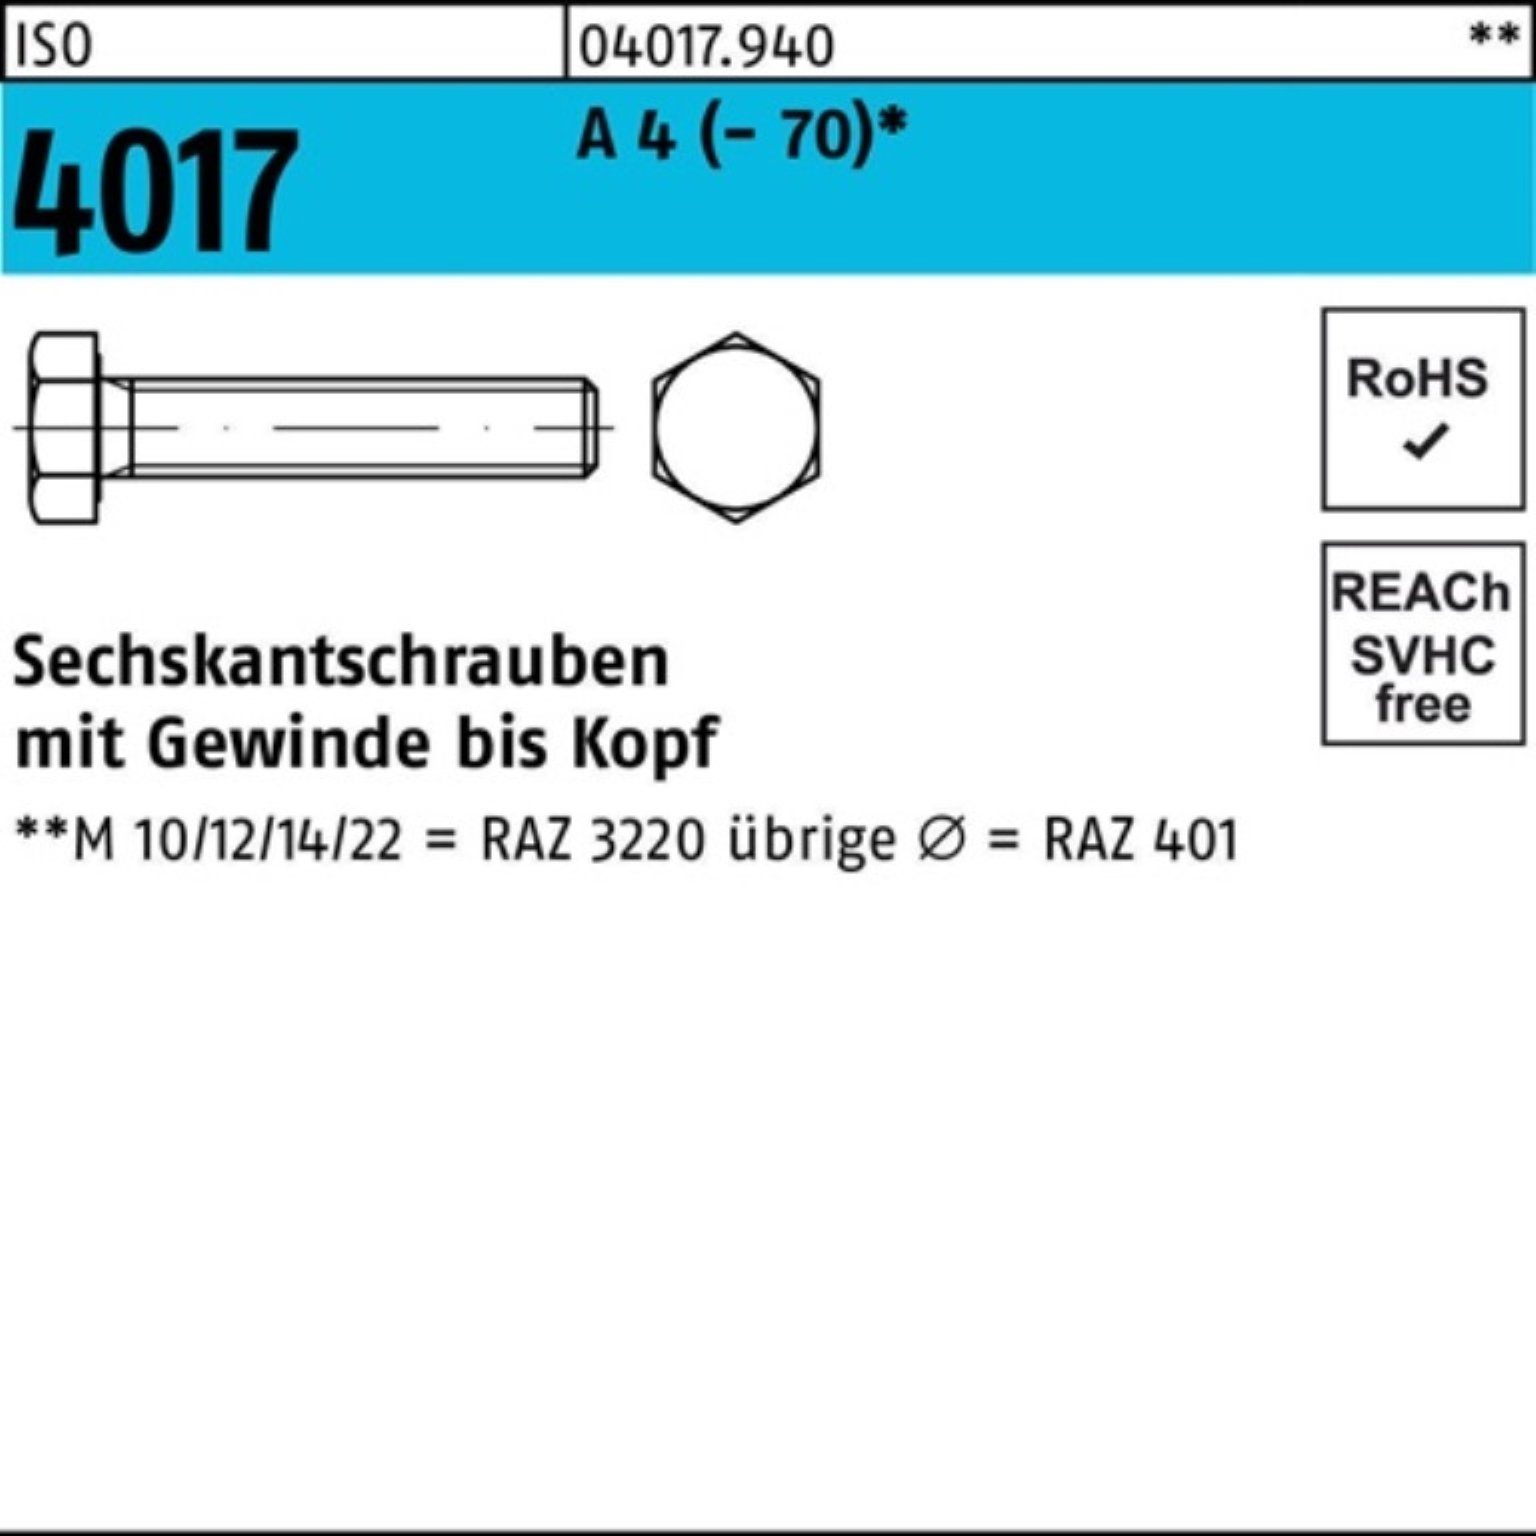 Bufab Sechskantschraube 100er Pack Sechskantschraube ISO 4017 VG M27x 55 A 4 (70) 1 Stück I